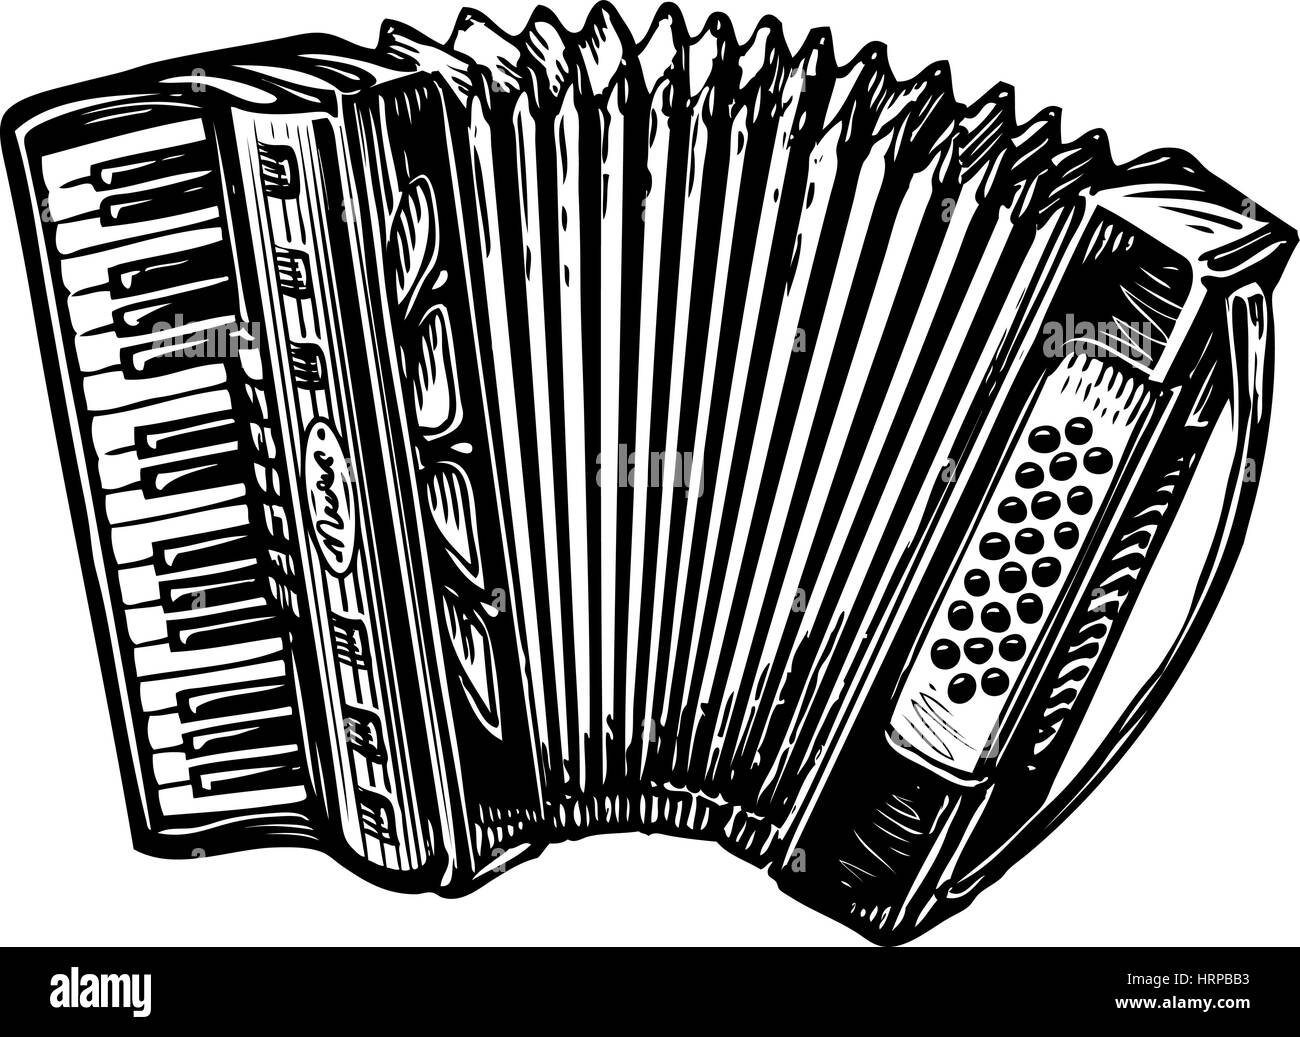 Handgezeichnete Vintage Akkordeon, Bayan. Musikinstrument, Chanson, Melodie-Symbol. Skizze-Vektor-illustration Stock Vektor